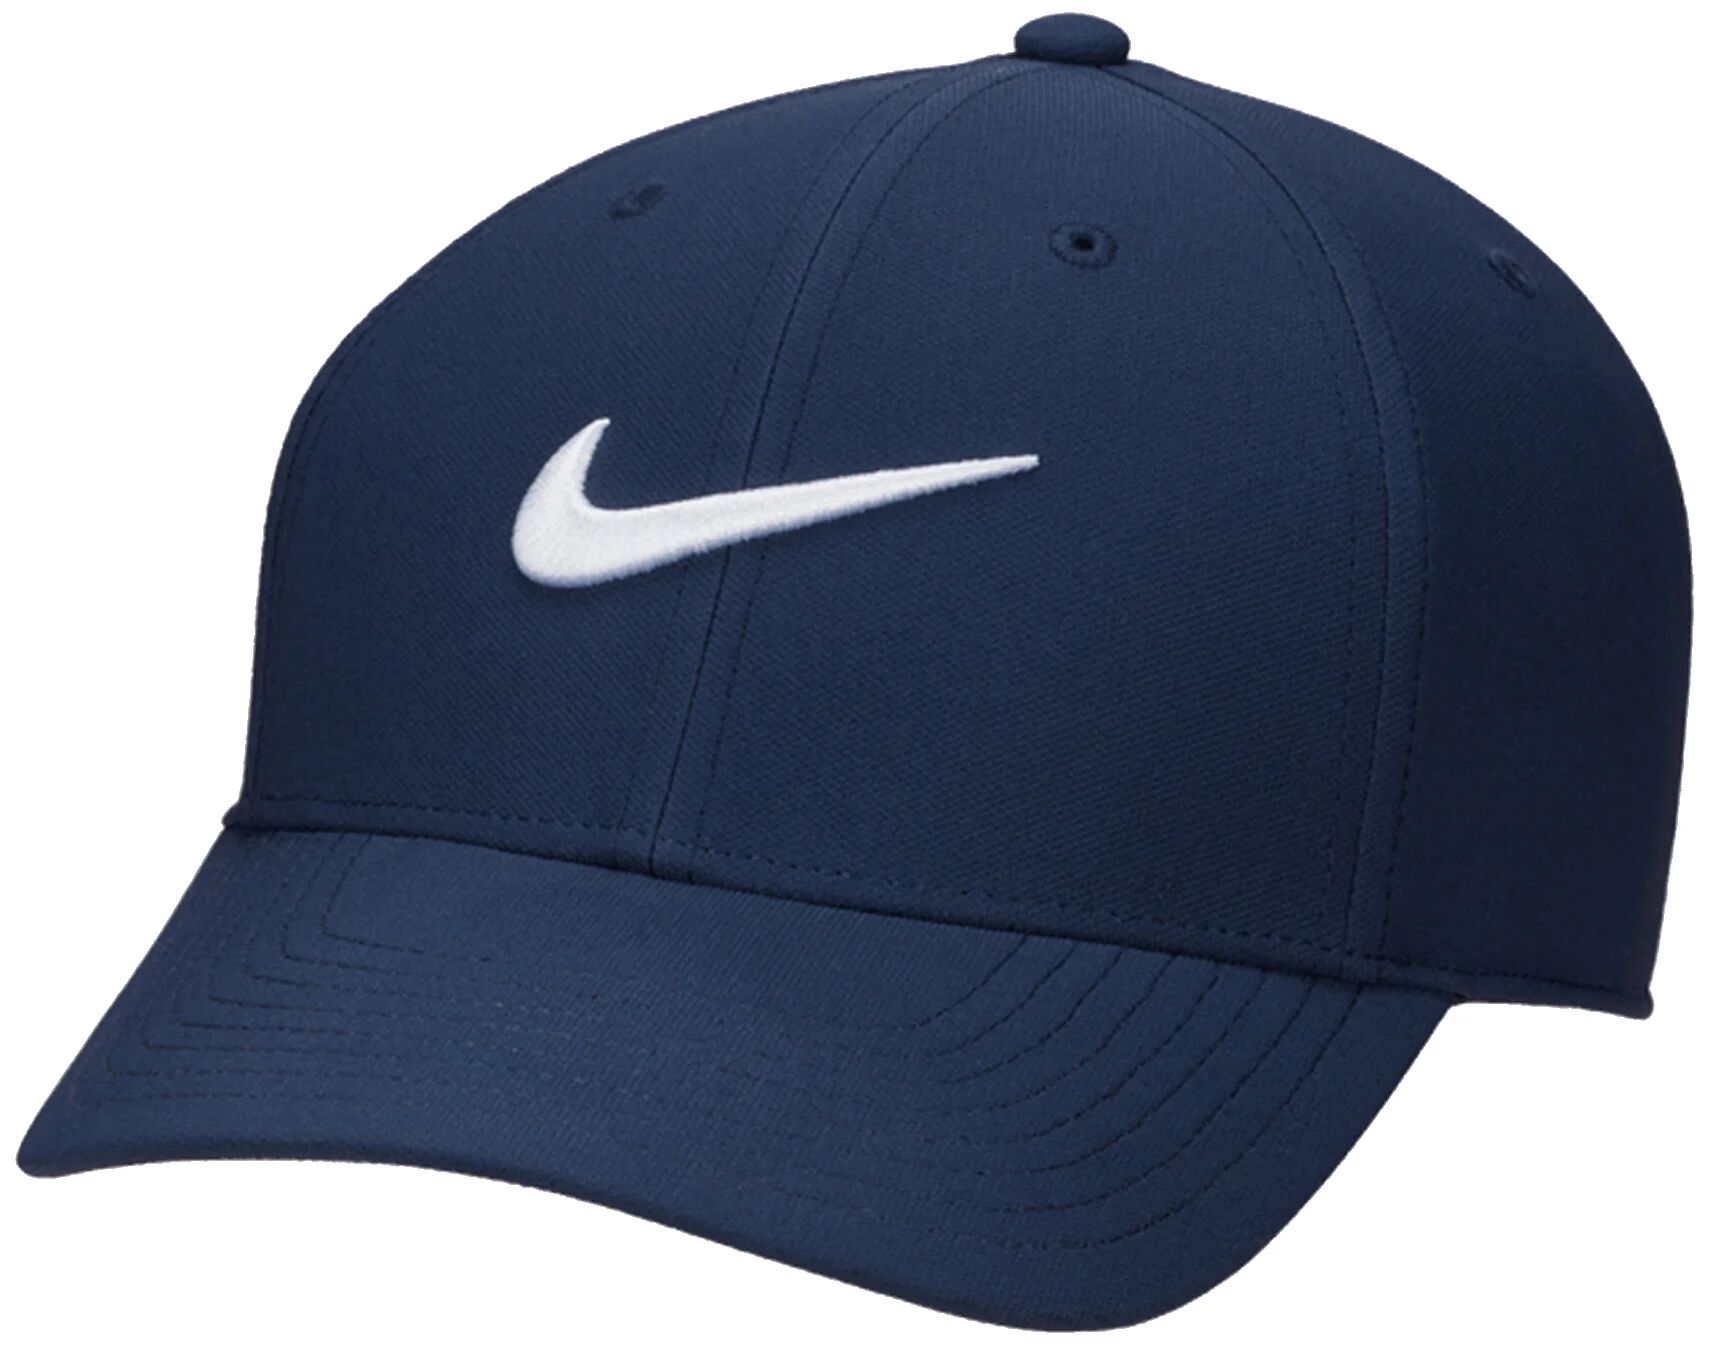 Nike Dri-FIT Club Structured Swoosh Men's Golf Hat - Blue, Size: Small/Medium